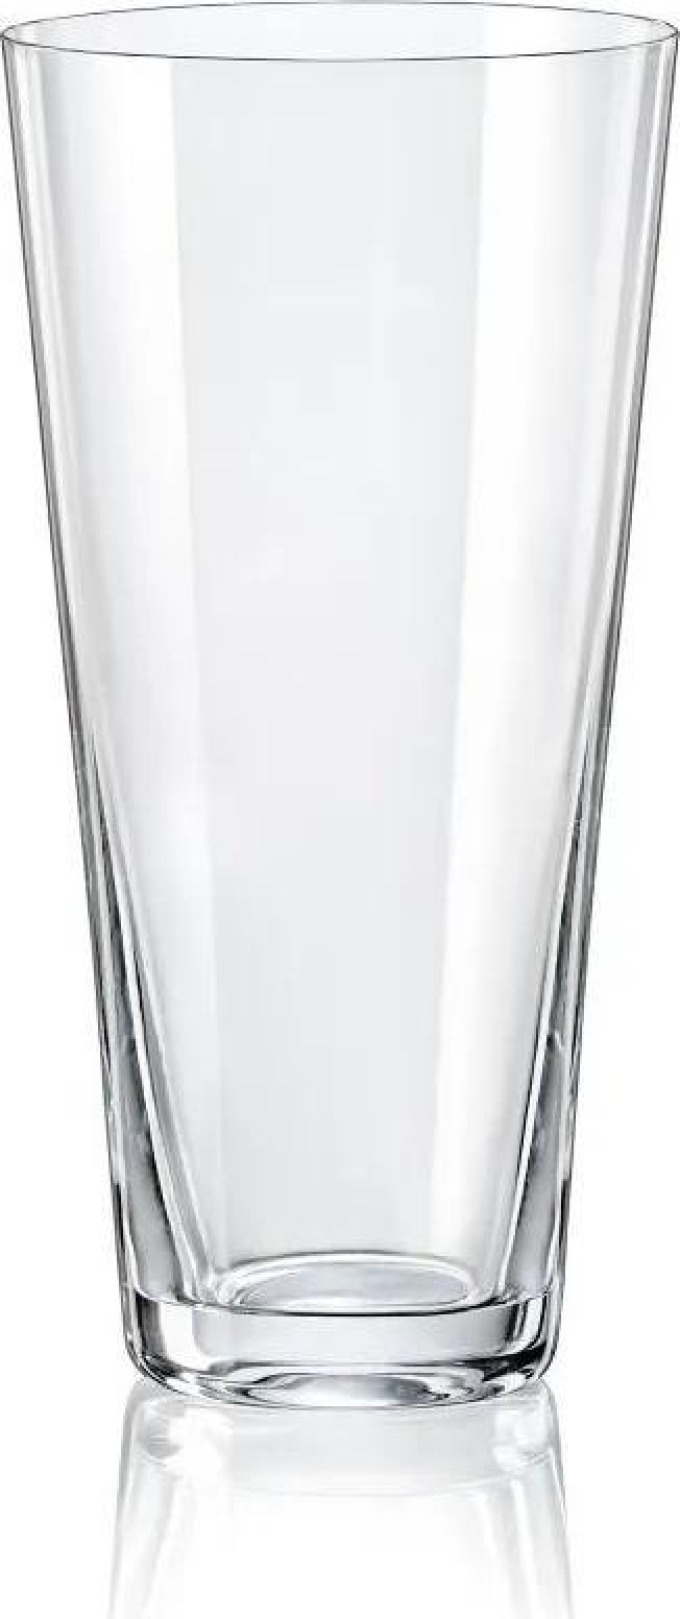 Crystalex - Bohemia Crystal Váza konická, výška 290 mm, 1 ks